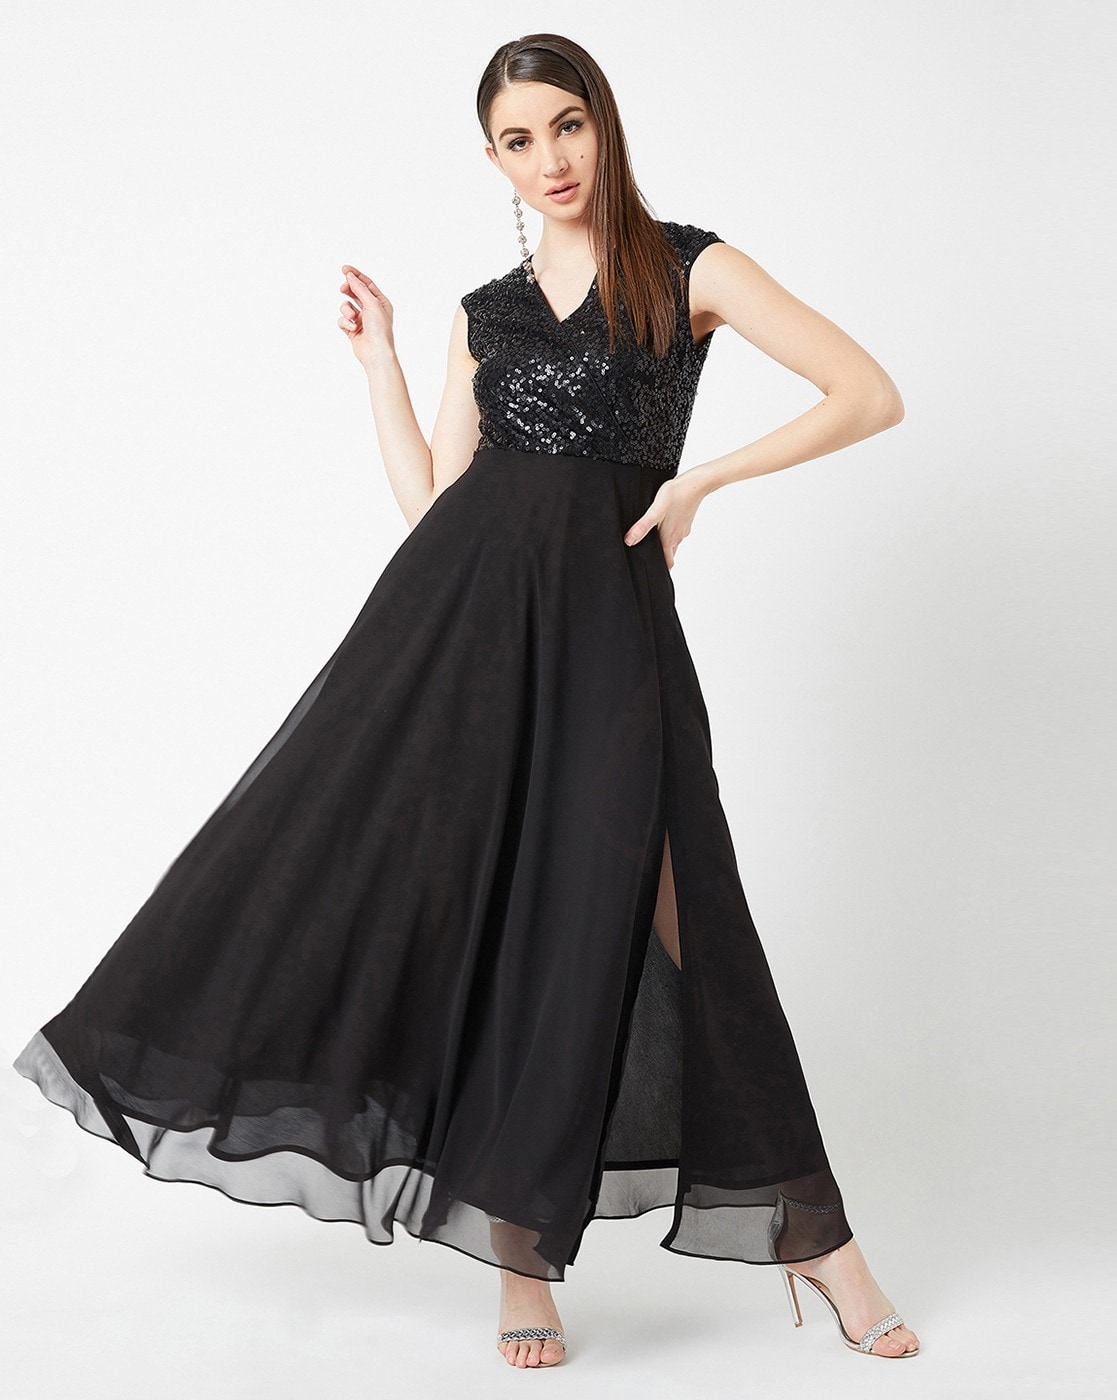 Lace Black Dresses